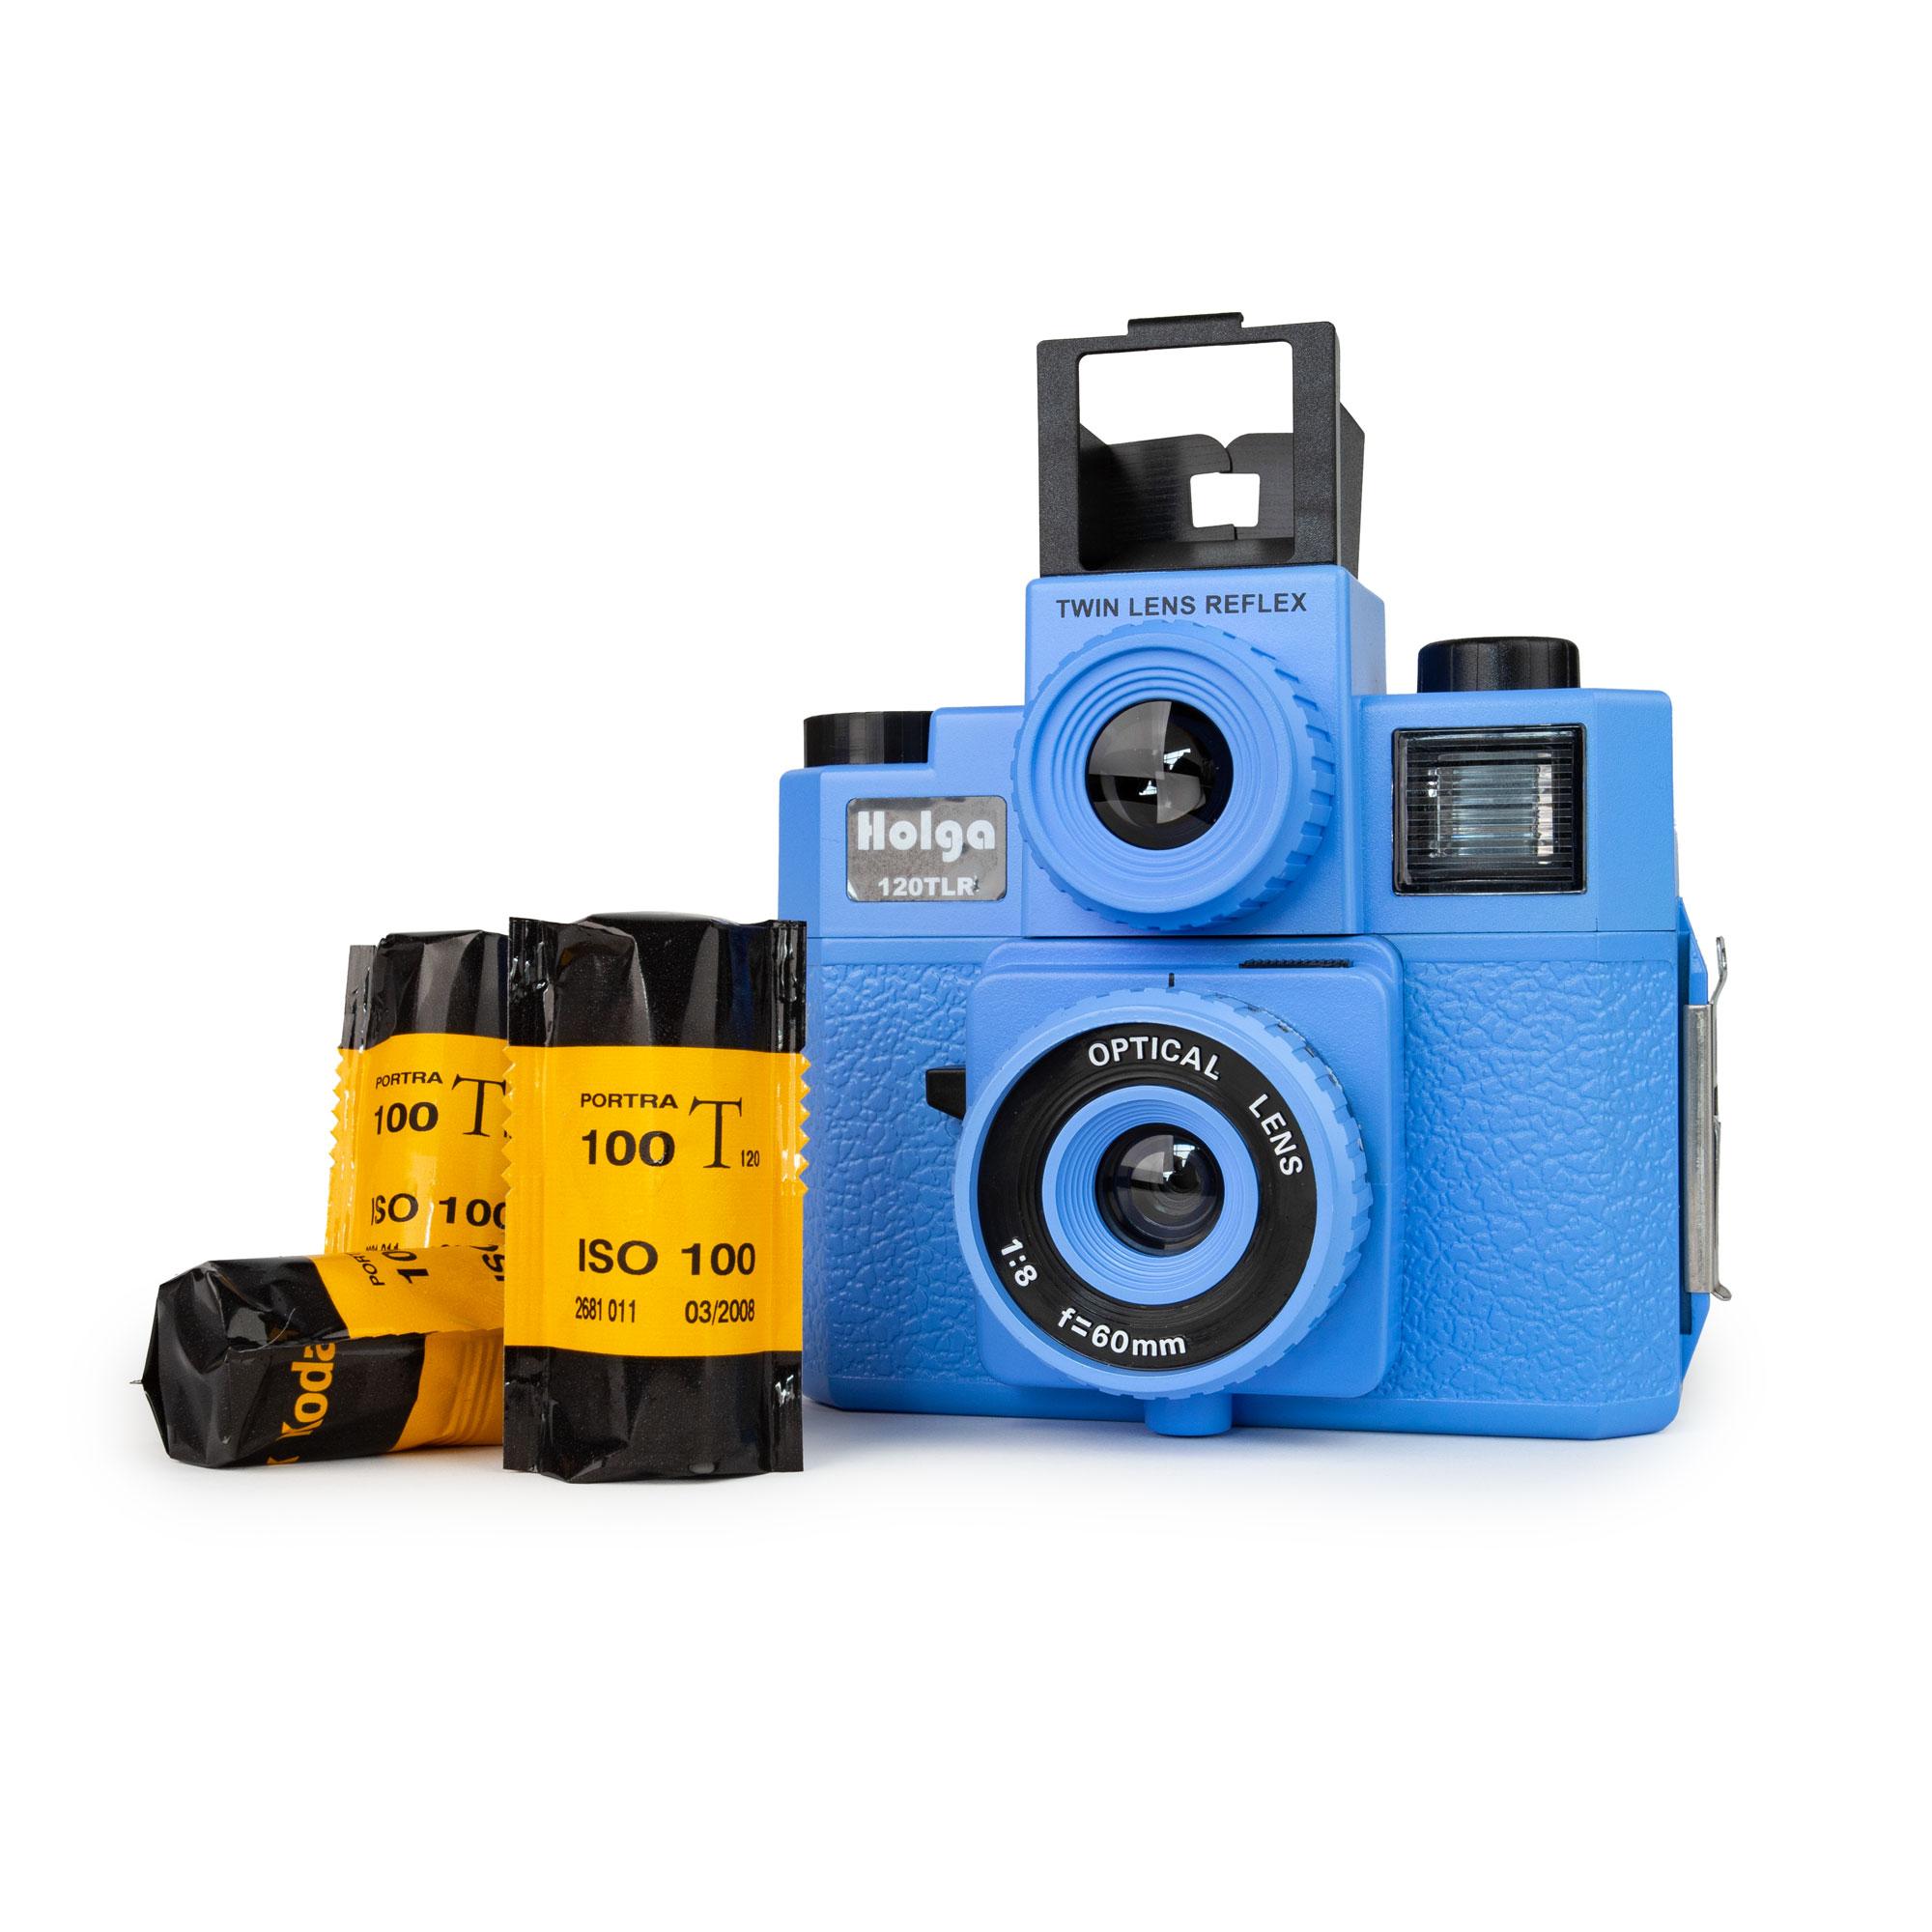 Set HOLGA 120 TLR appareil photo bleu Twinlens avec flash 3x Kodak Portra 100T 120